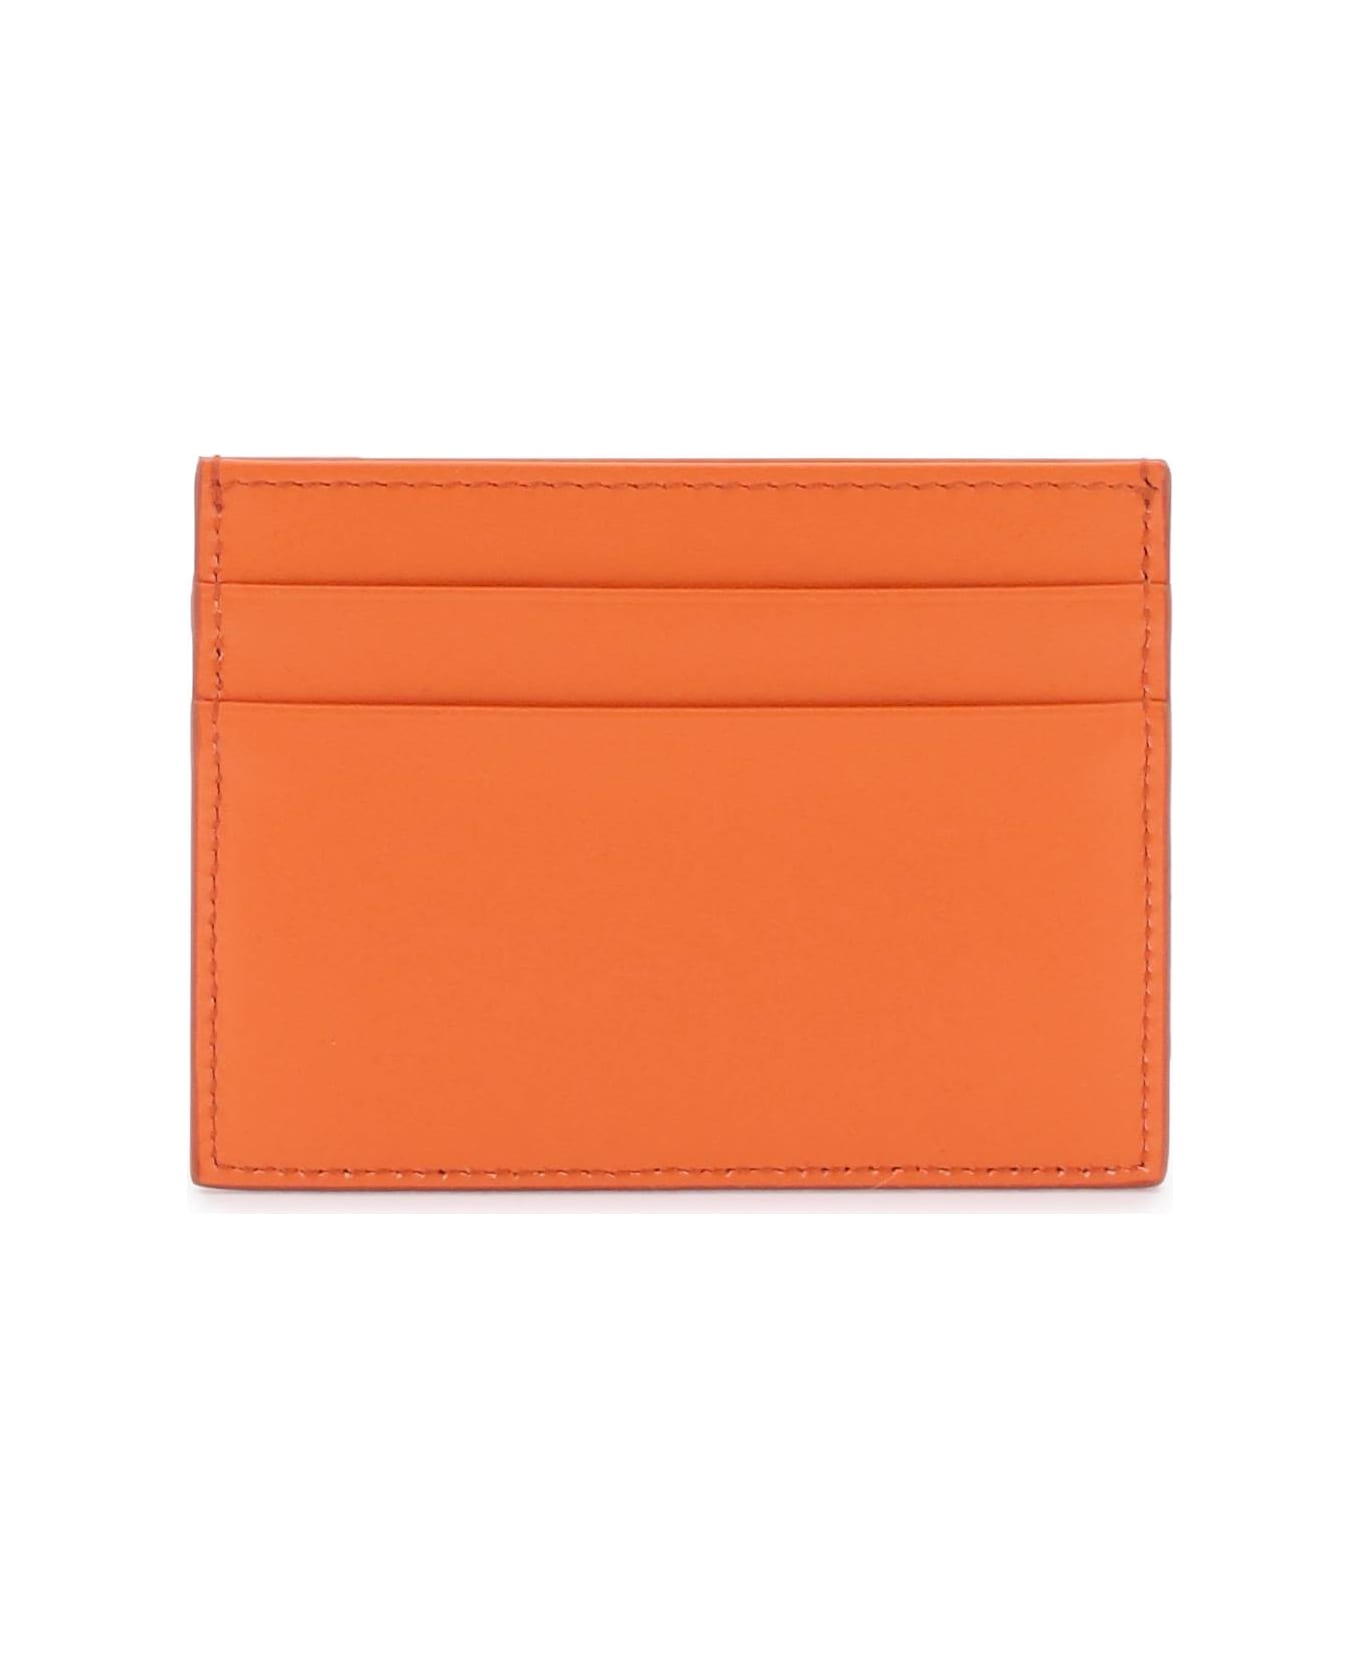 Dolce & Gabbana Leather Card Holder - ARANCIO (Orange)